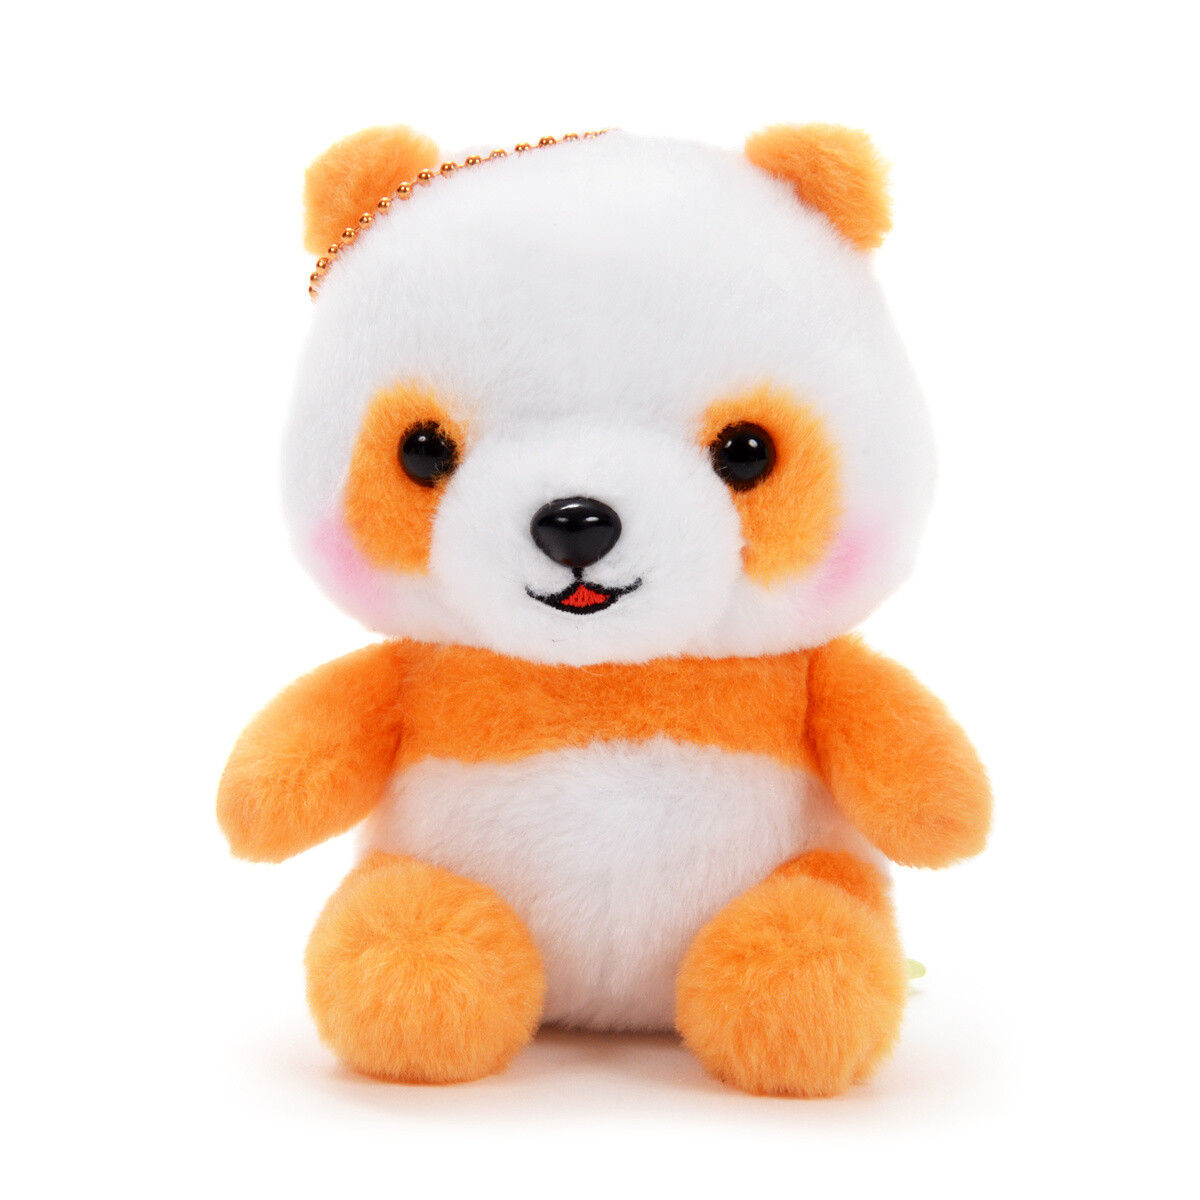 panda baby toy